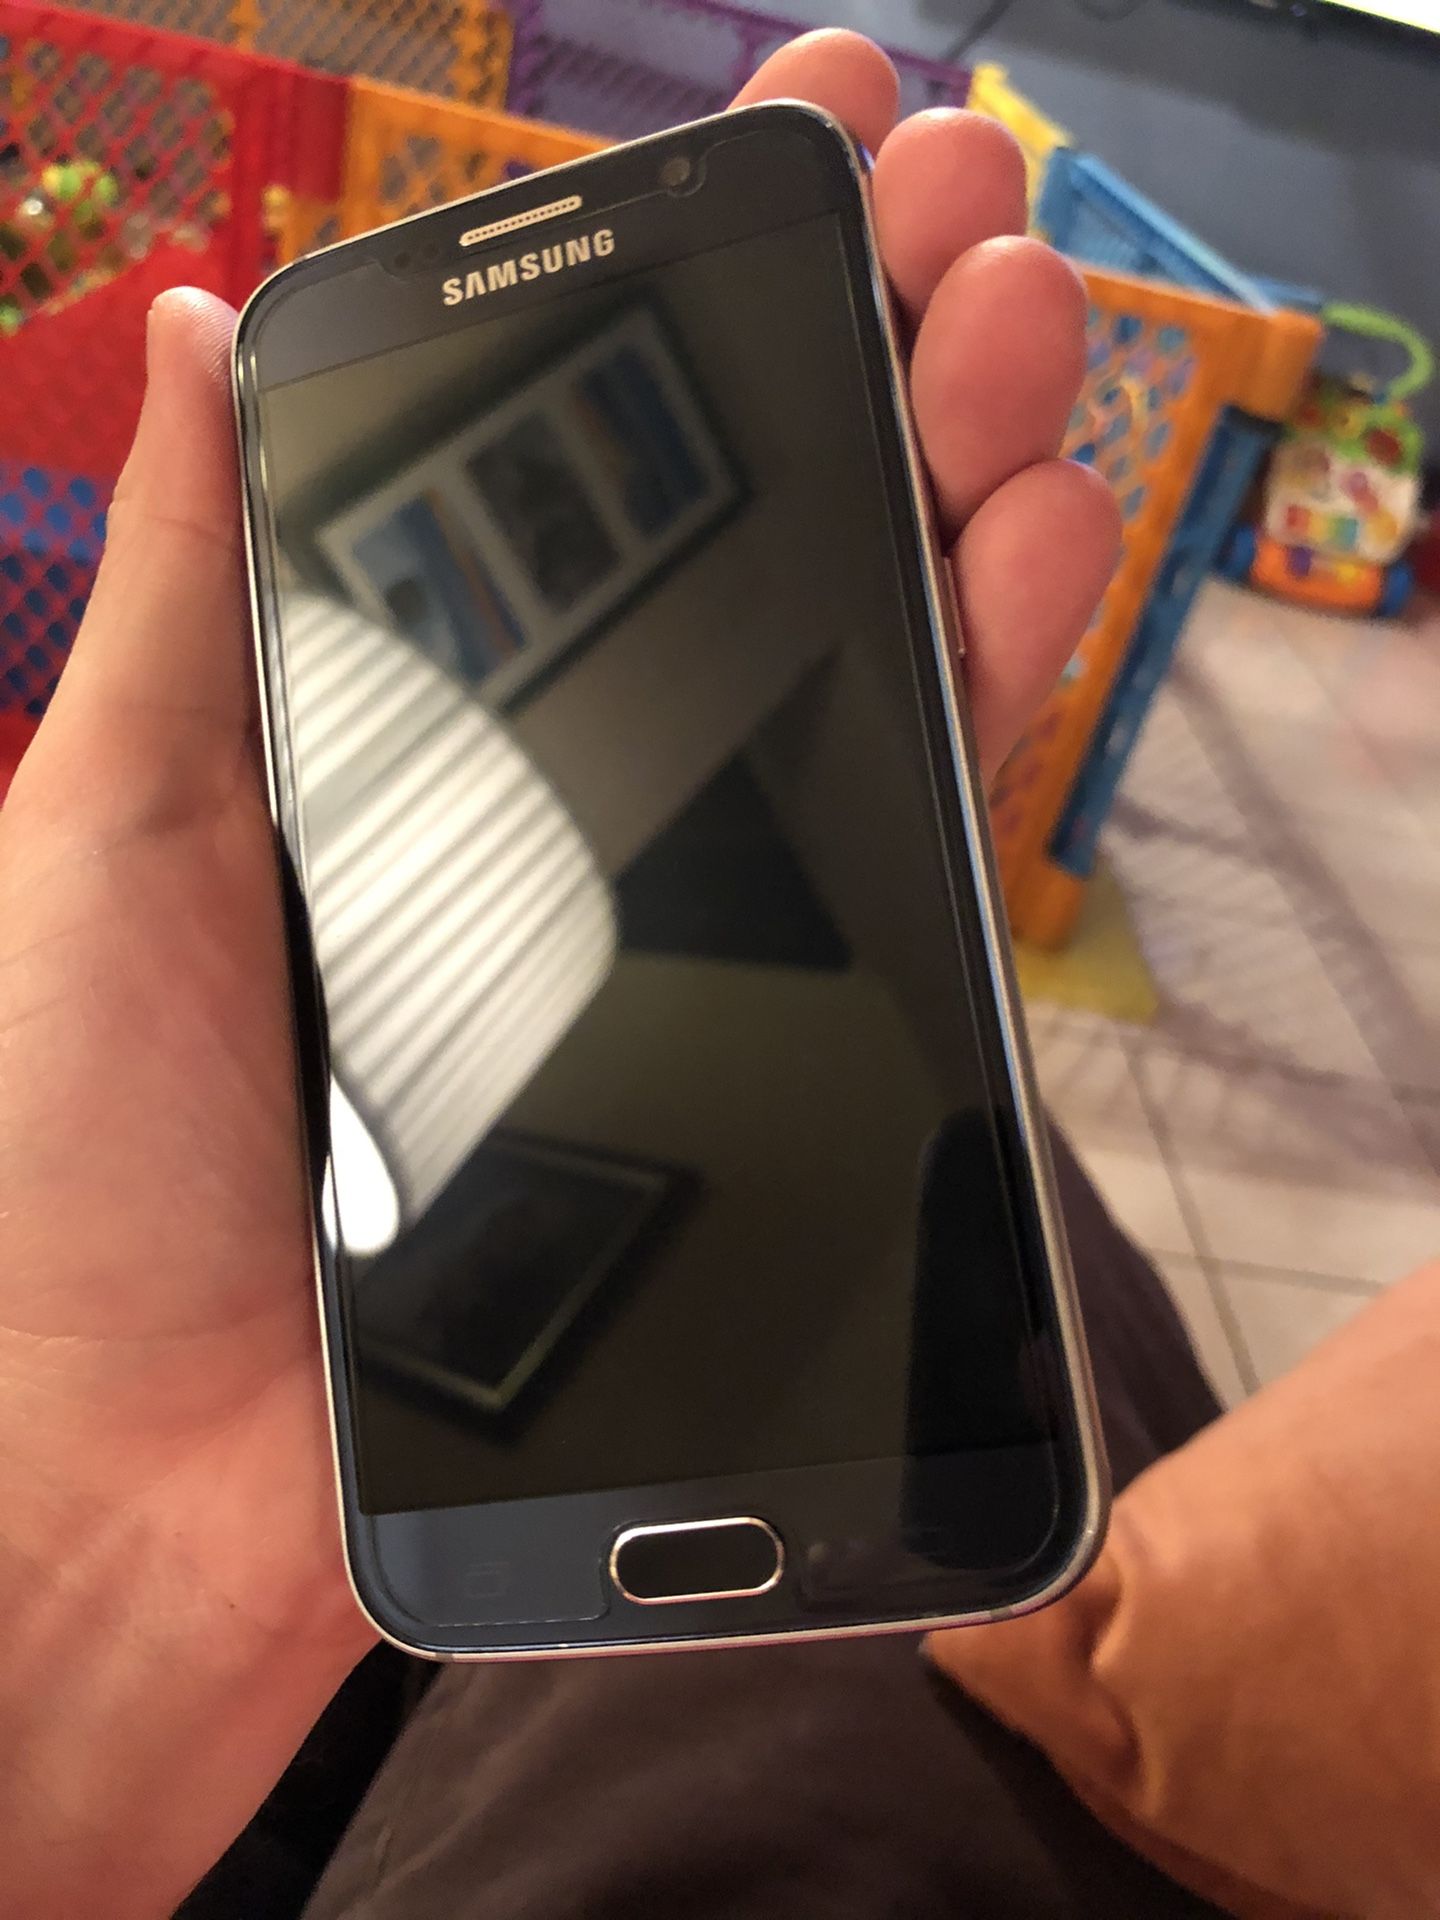 Samsung Galaxy S6 32GB - Verizon